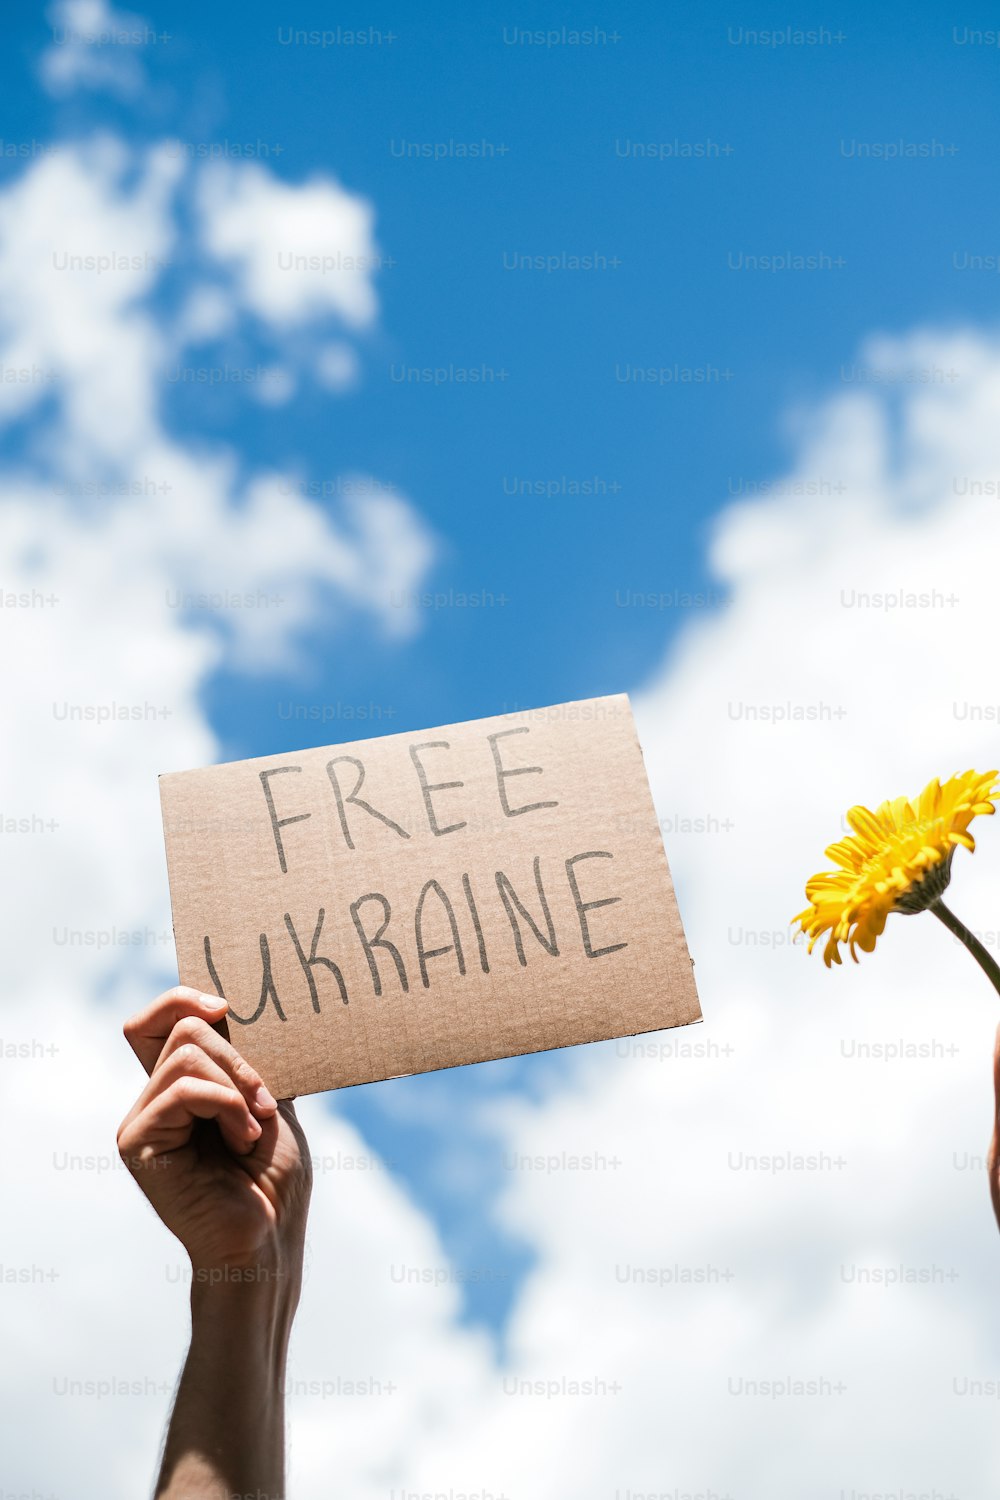 自由ウクライナと書かれた看板を持っている人